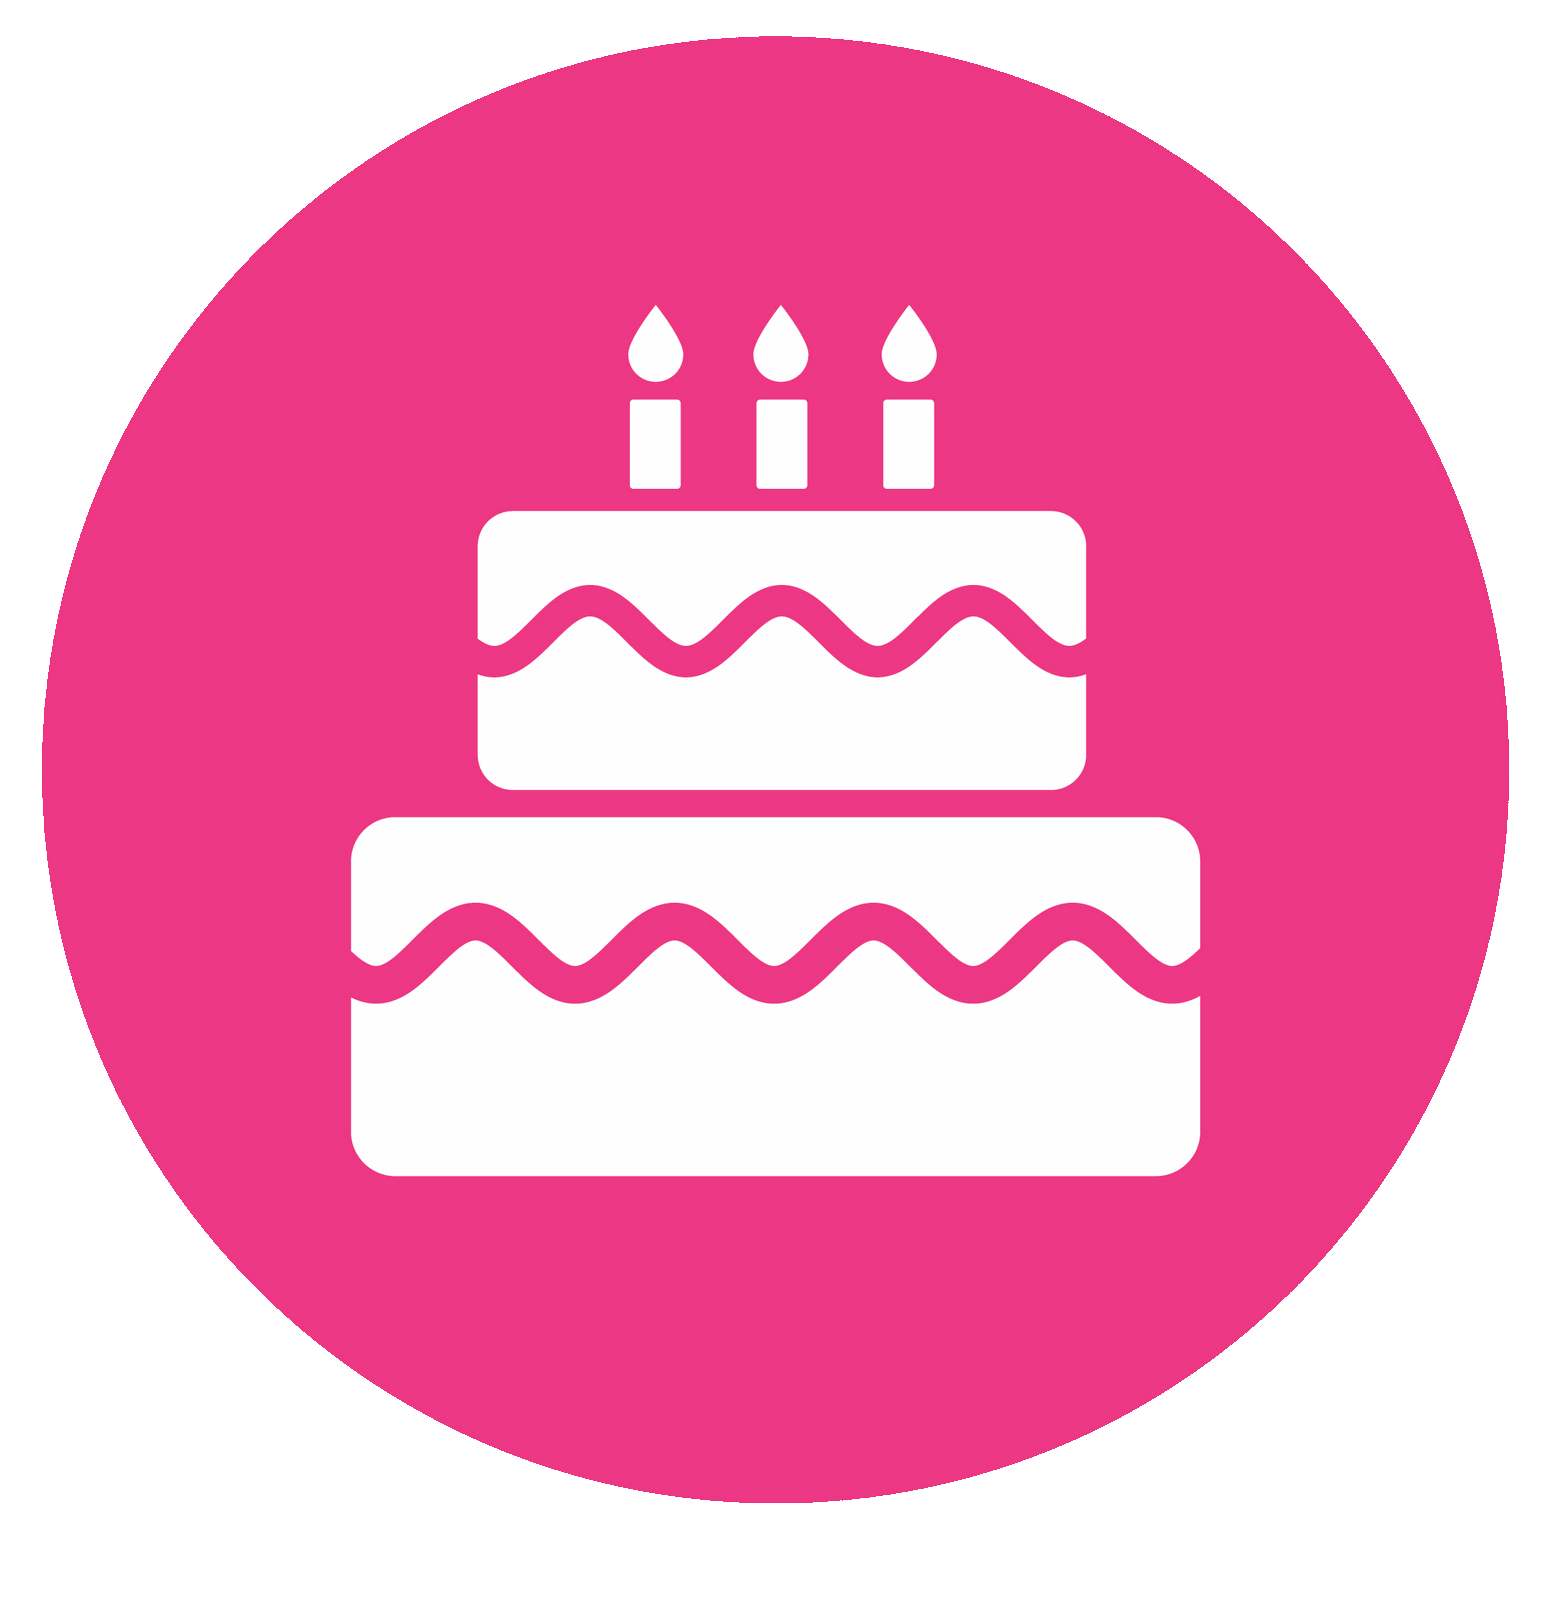 Date of birthday. Торт значок. Значок день рождения. Значок праздничного торта. Торт иконка.